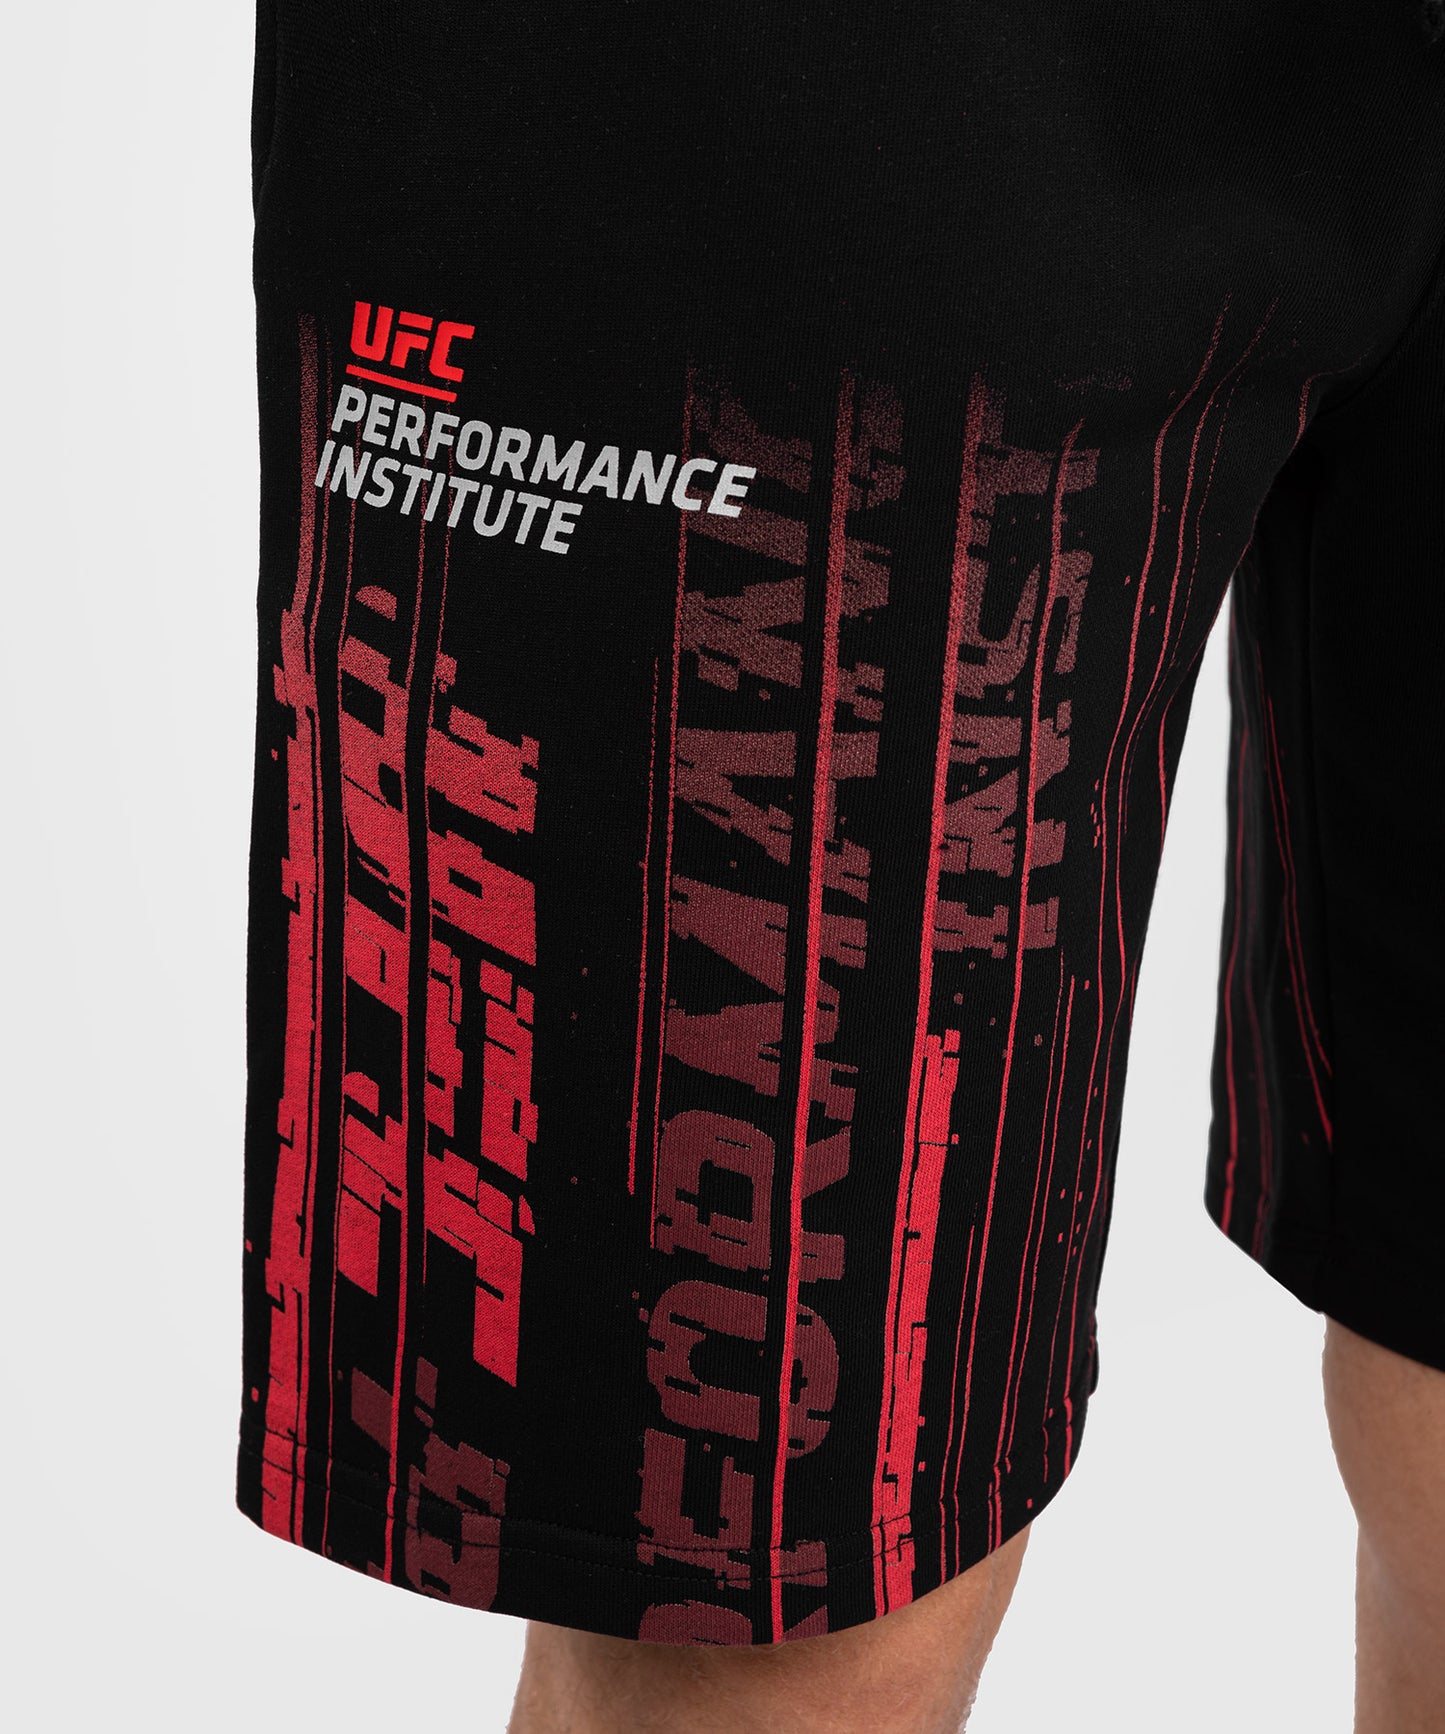 UFC Venum Performance Institute 2.0 Katoenen Short voor Heren - Zwart/Rood